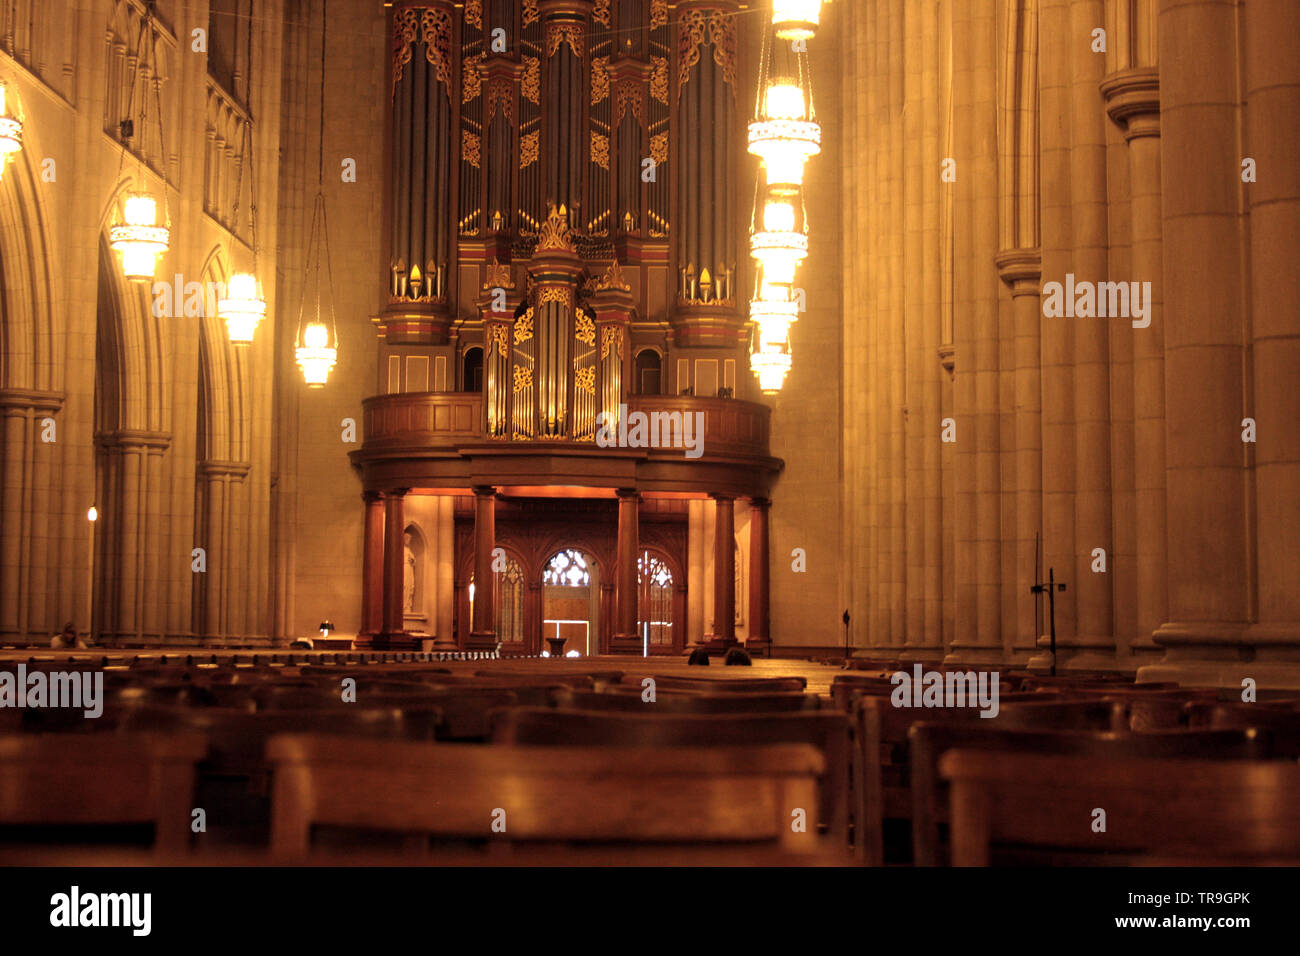 Interno della Cappella Ducale, con la grand organi a canne nel retro. Durham, NC, Stati Uniti d'America. Foto Stock